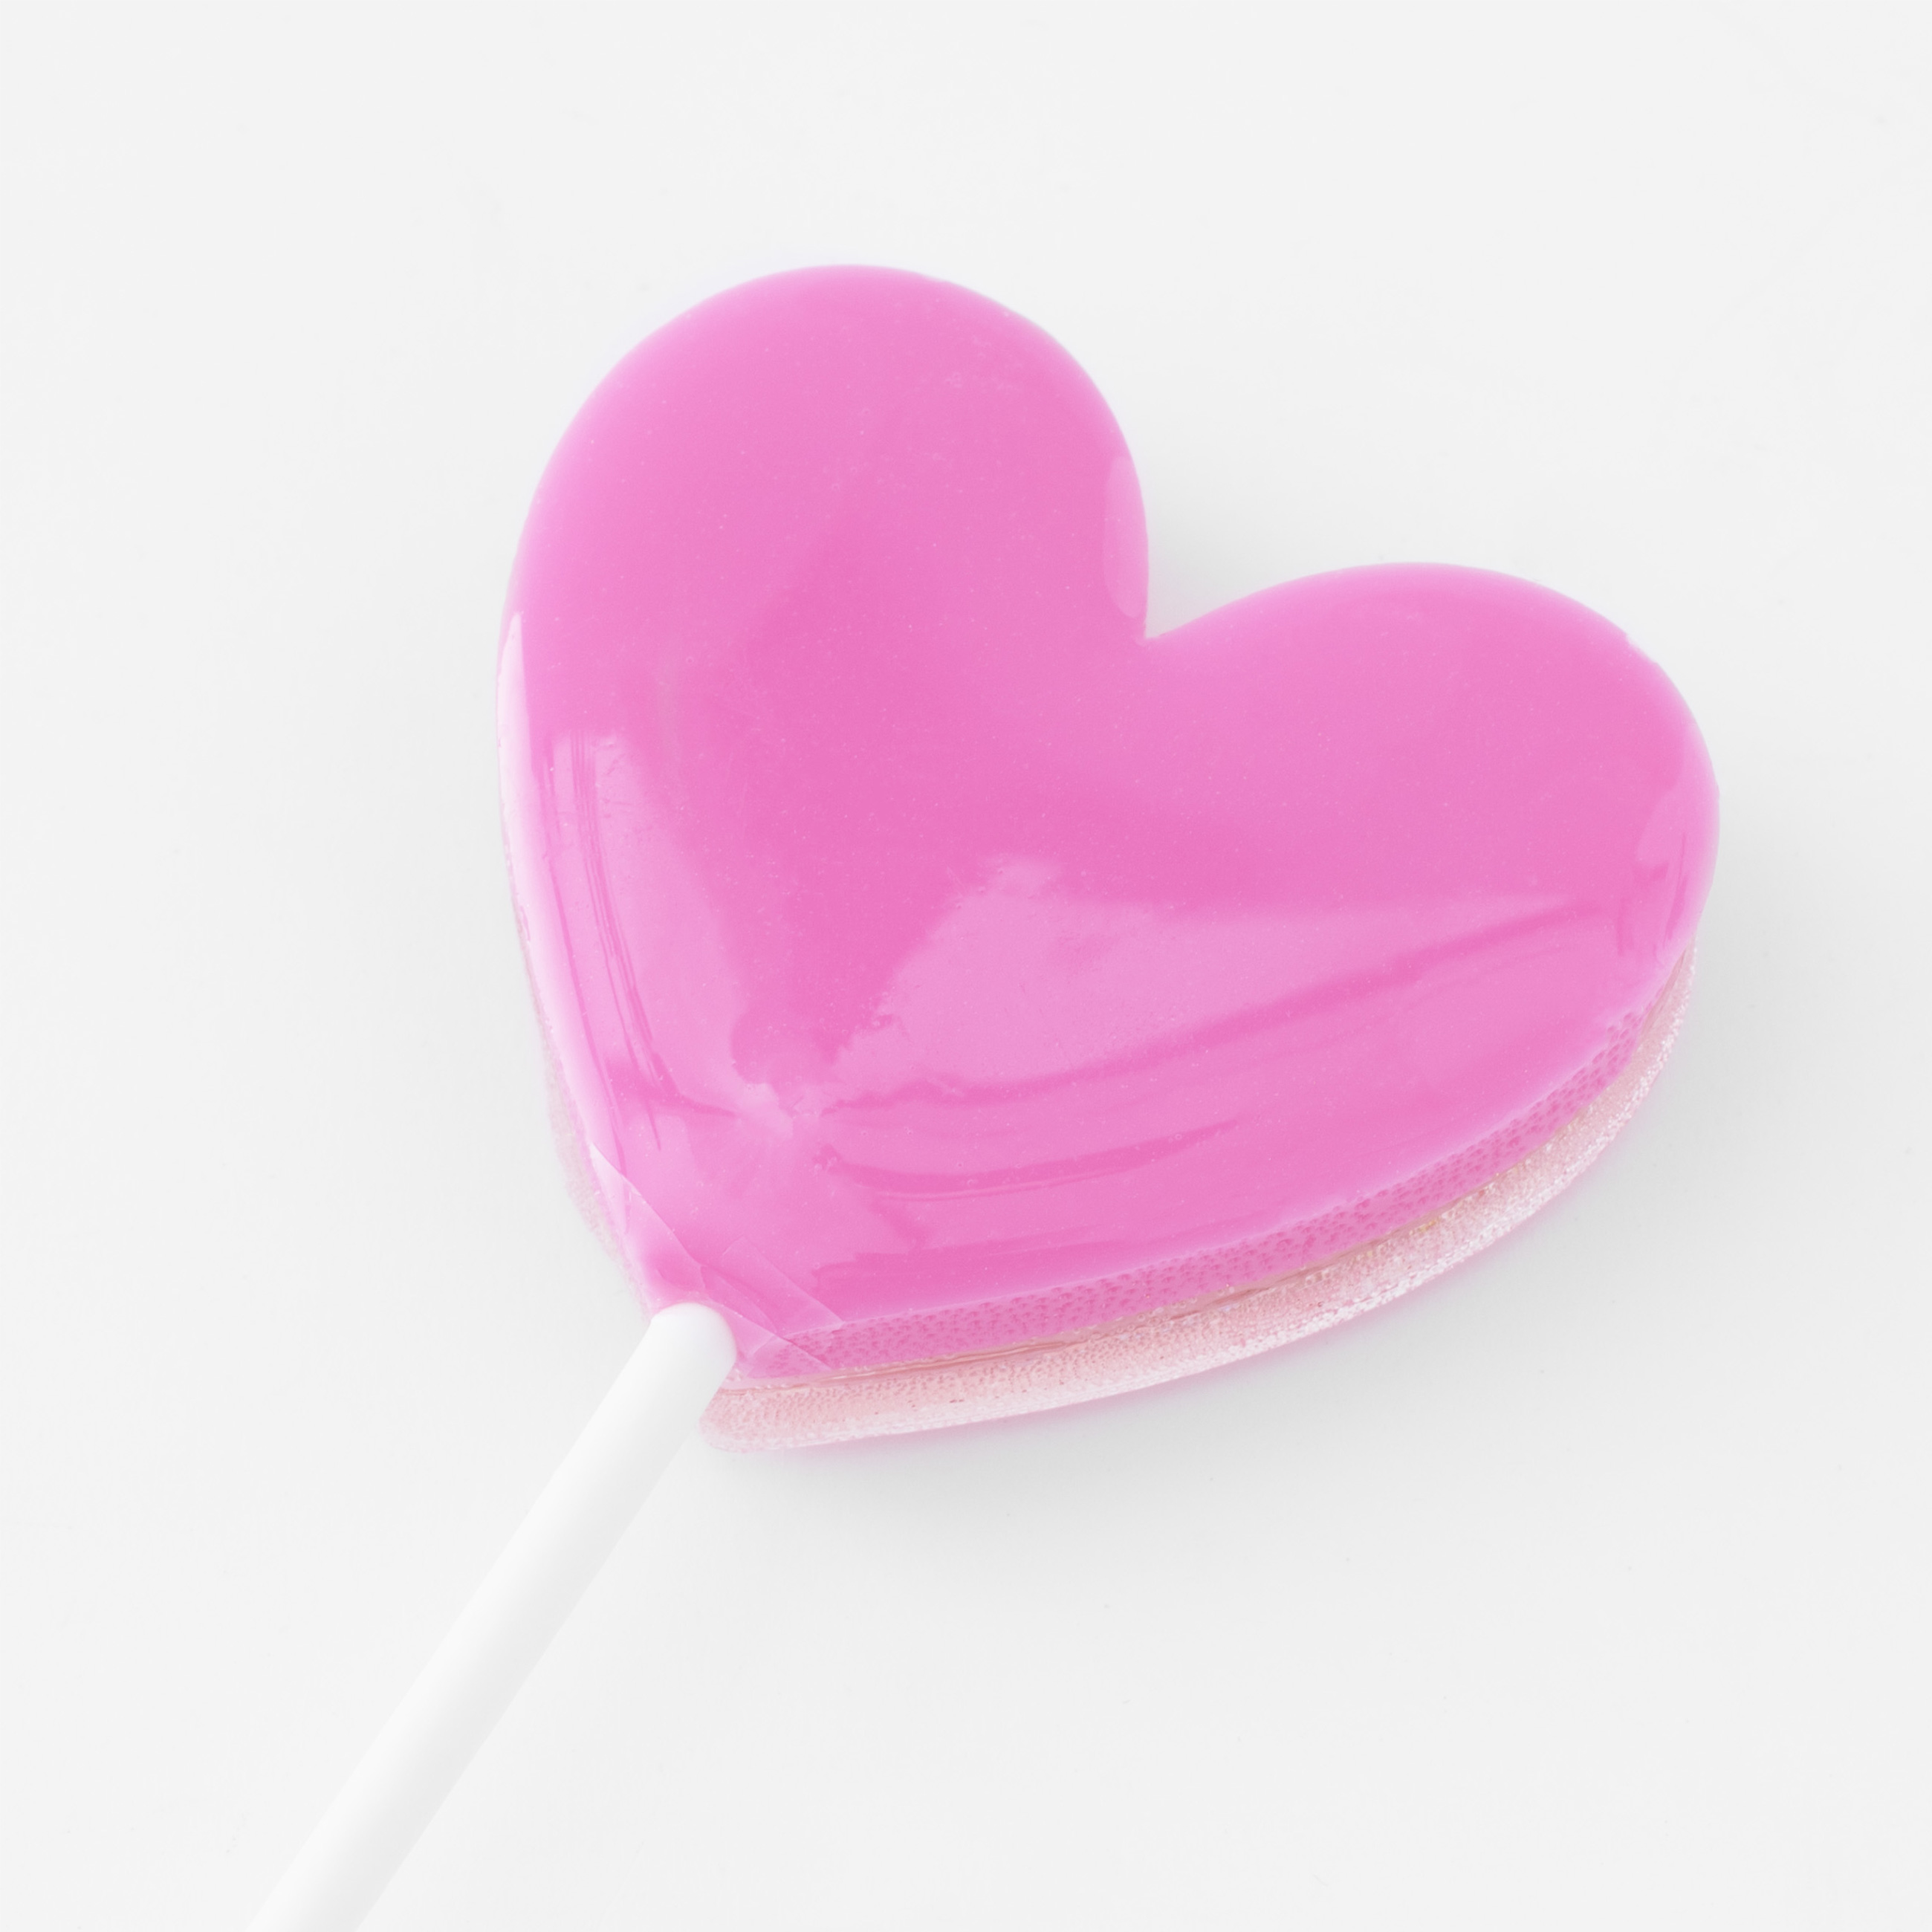 Леденец, 30 гр, погремушка, на палочке, изомальт, розовый, Сердце, Heart изображение № 6